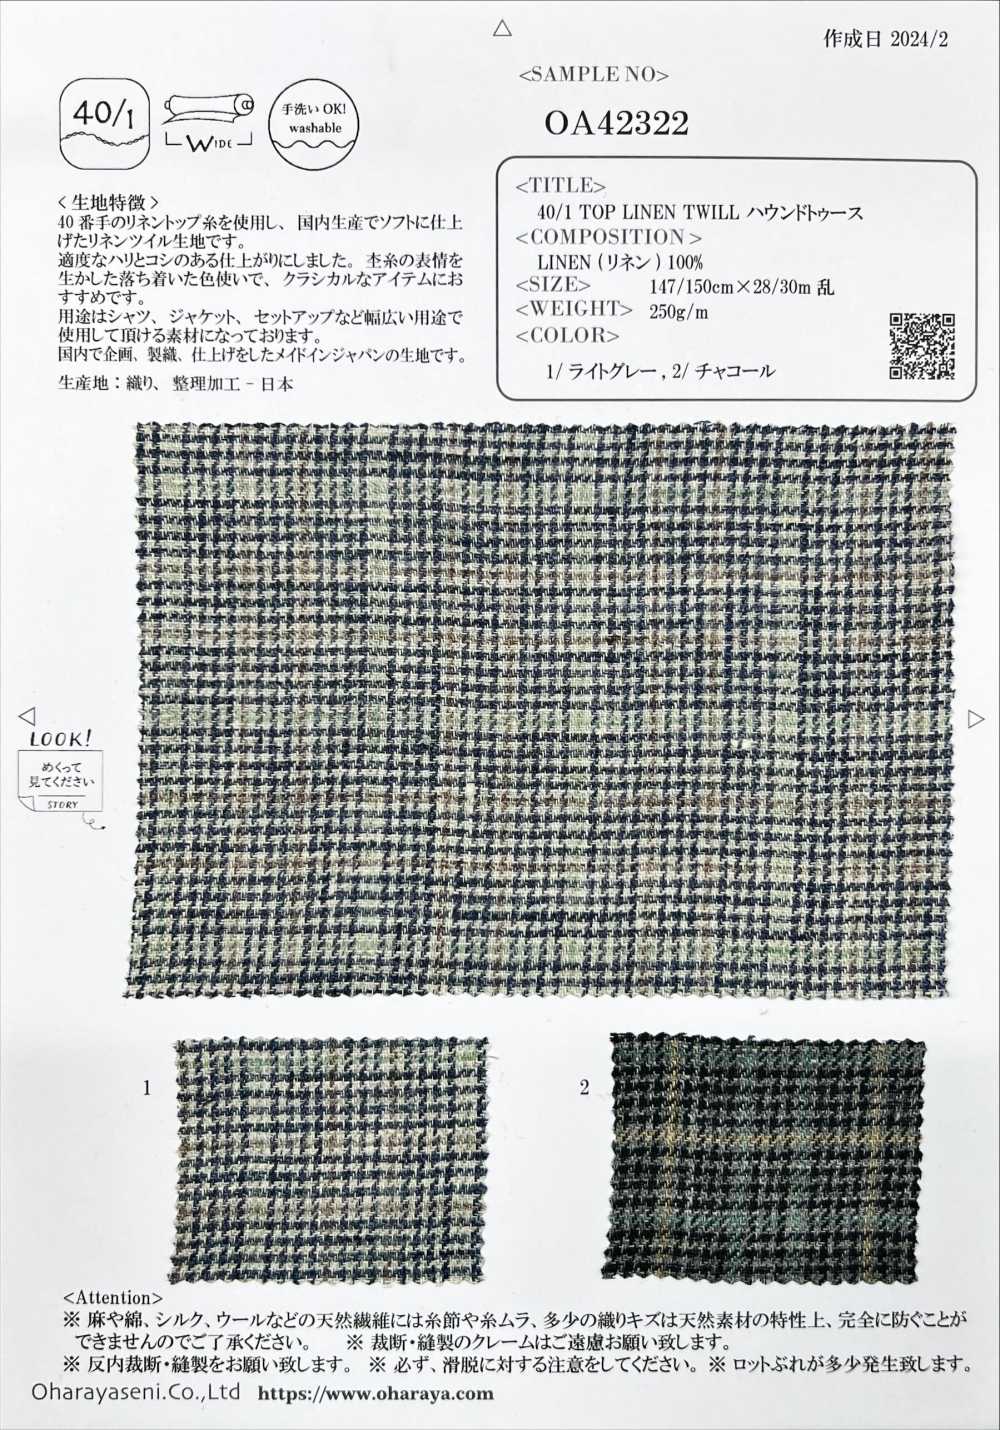 OA42322 40/1 TOP LINO SARGA Pata De Gallo[Fabrica Textil] Oharayaseni